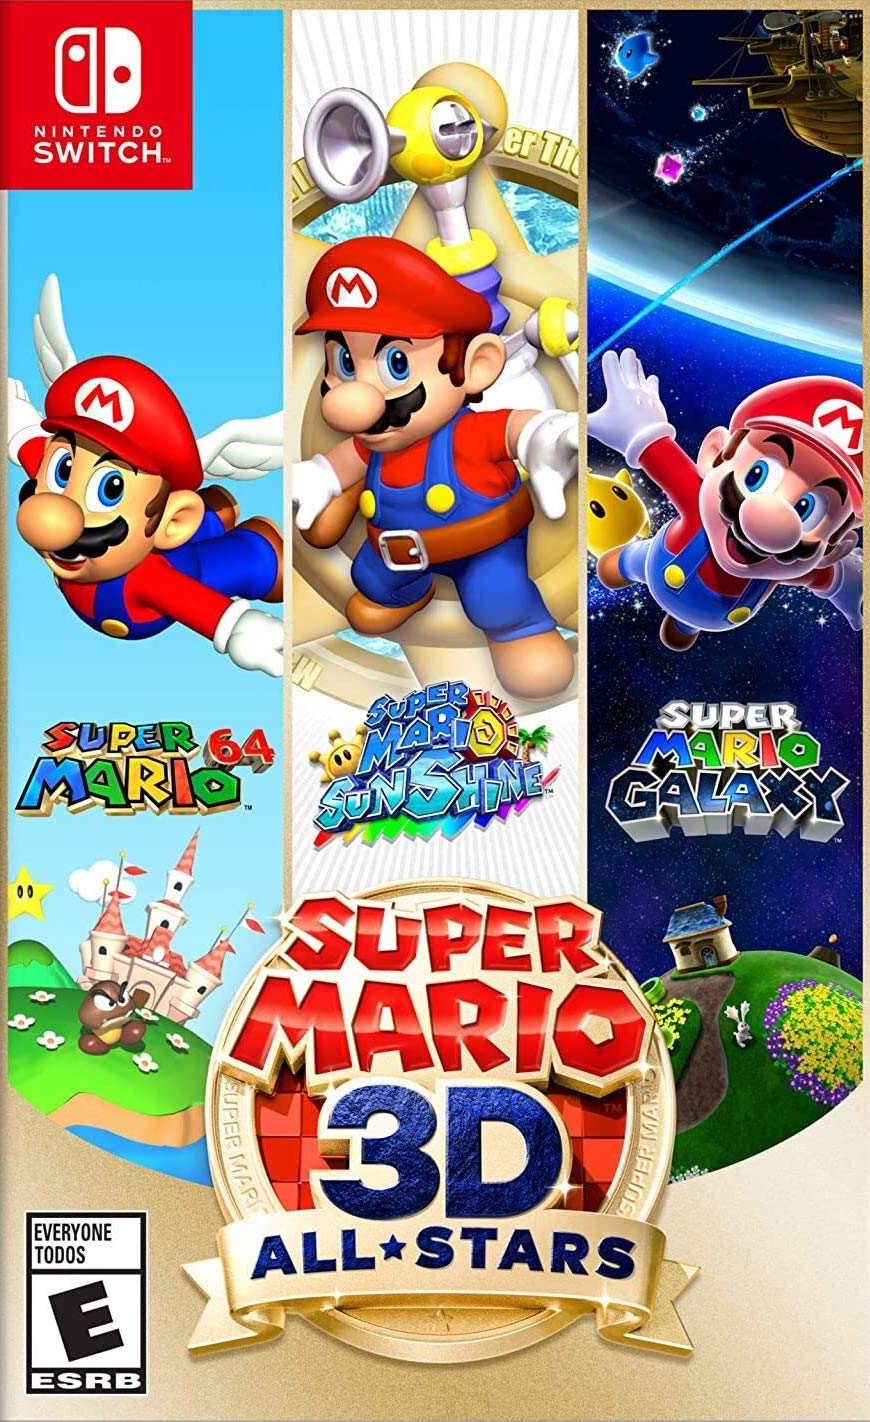 Super Mario 3D All-Stars (American Release) #Rare - Nintendo Switch